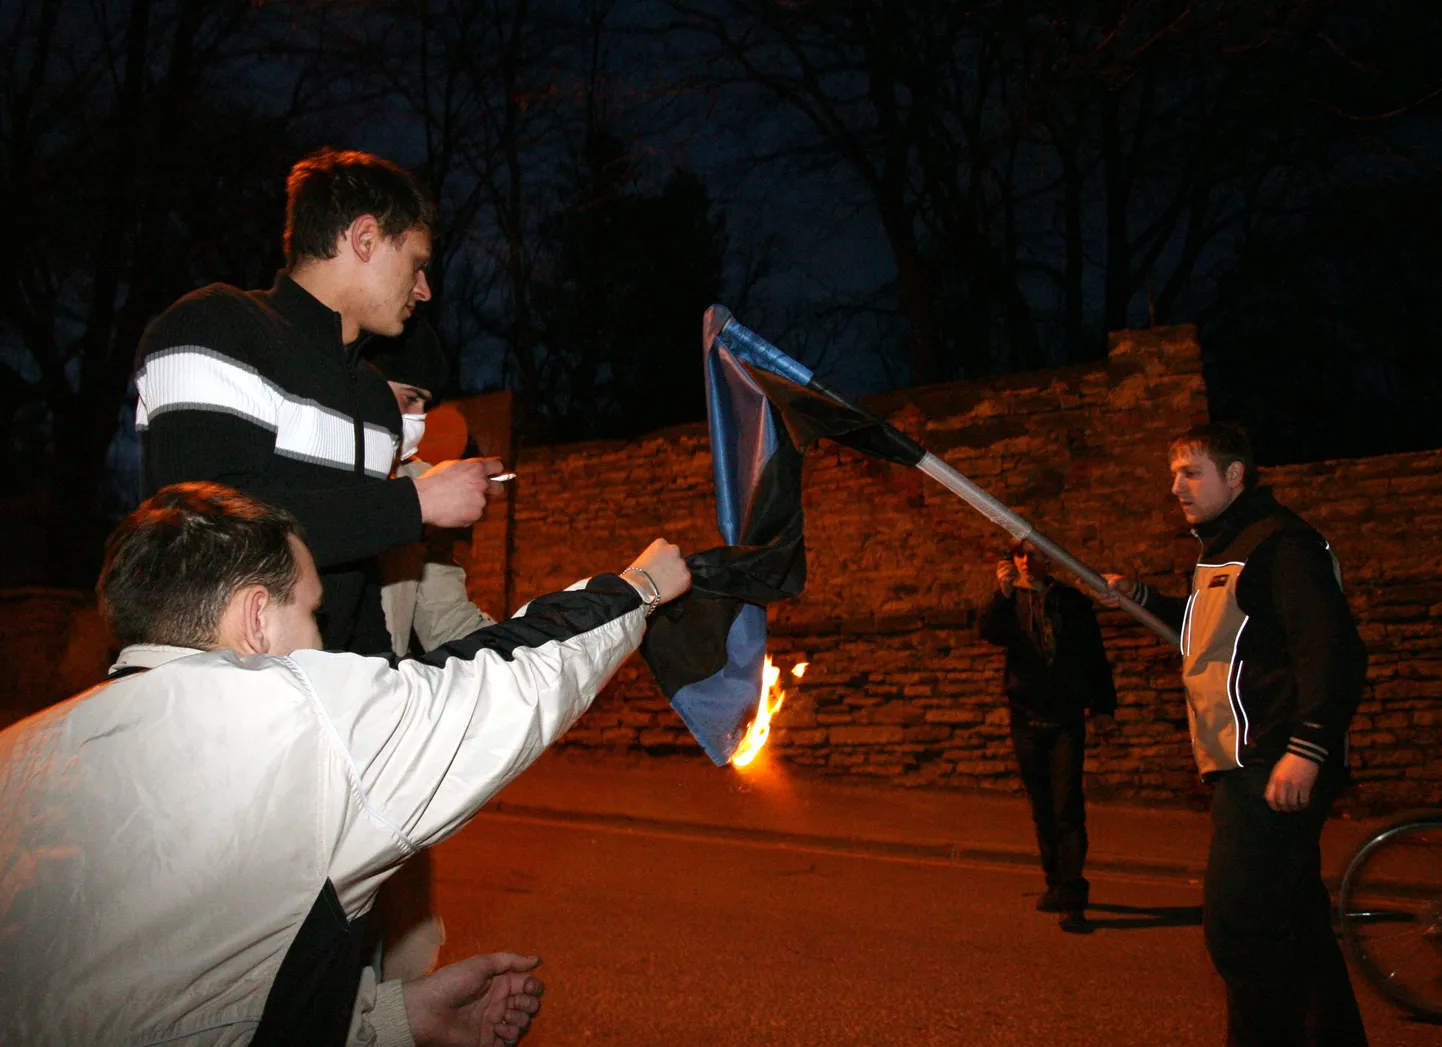 Sinimustvalge lipu põletamine pronksööl.